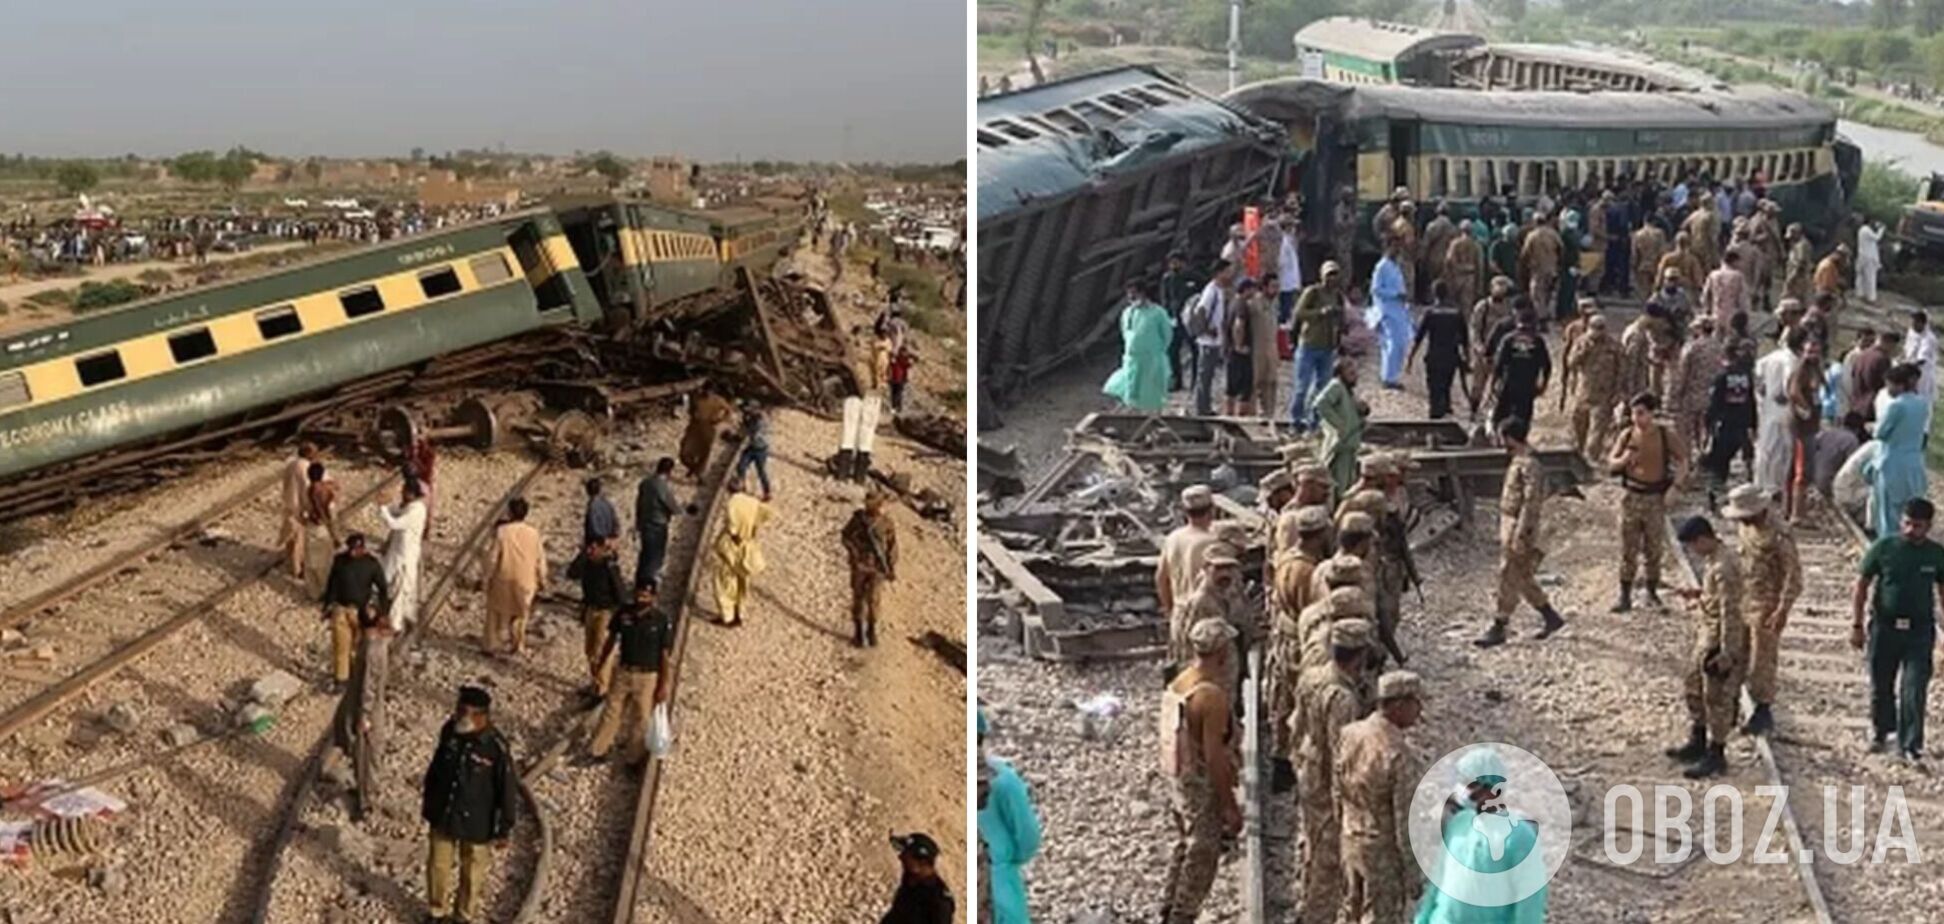 Десятки погибших, сотни раненых: в Пакистане сошел с рельсов пассажирский поезд. Фото